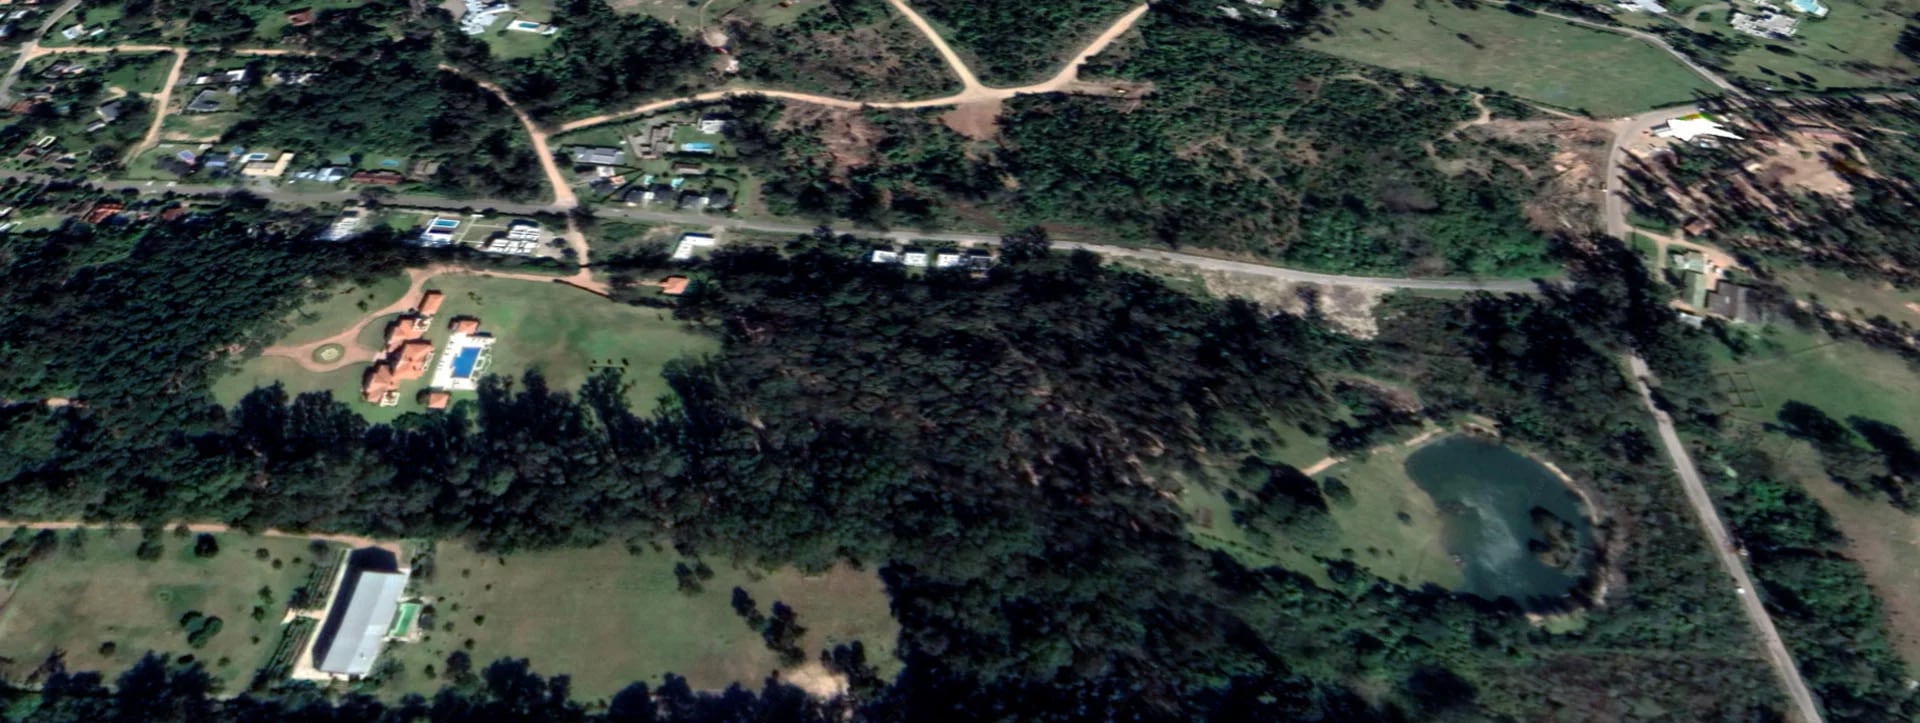 En esta imagen se puede apreciar toda la superficie de la chacra: desde la mansión, pasando por el bosque hasta su laguna artificial (Foto: captura Google Earth)